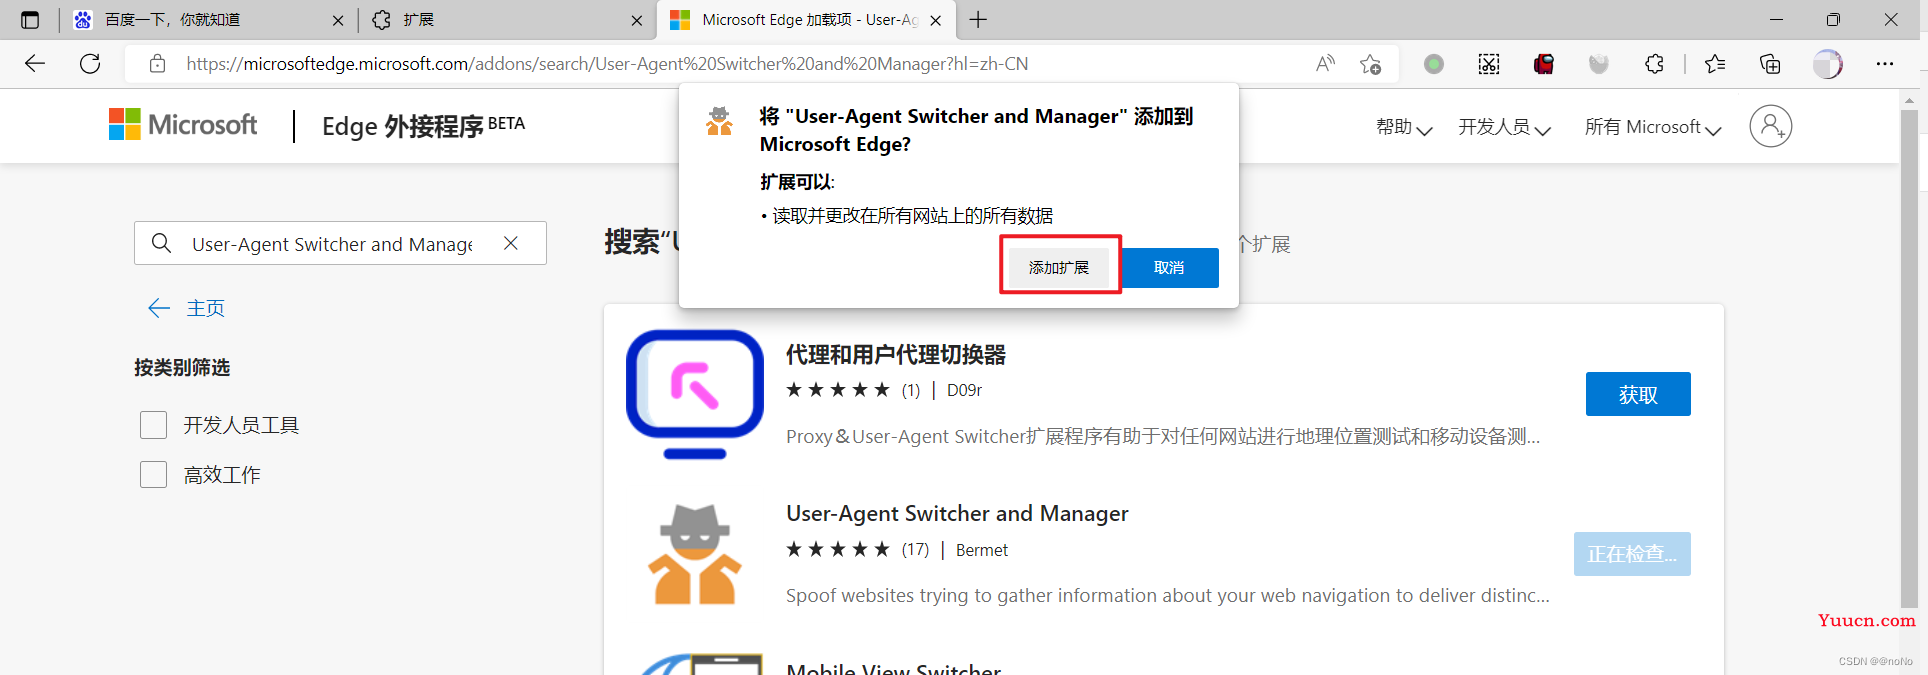 火狐浏览器&谷歌浏览器&Edge浏览器修改默认UA（User-Agent）